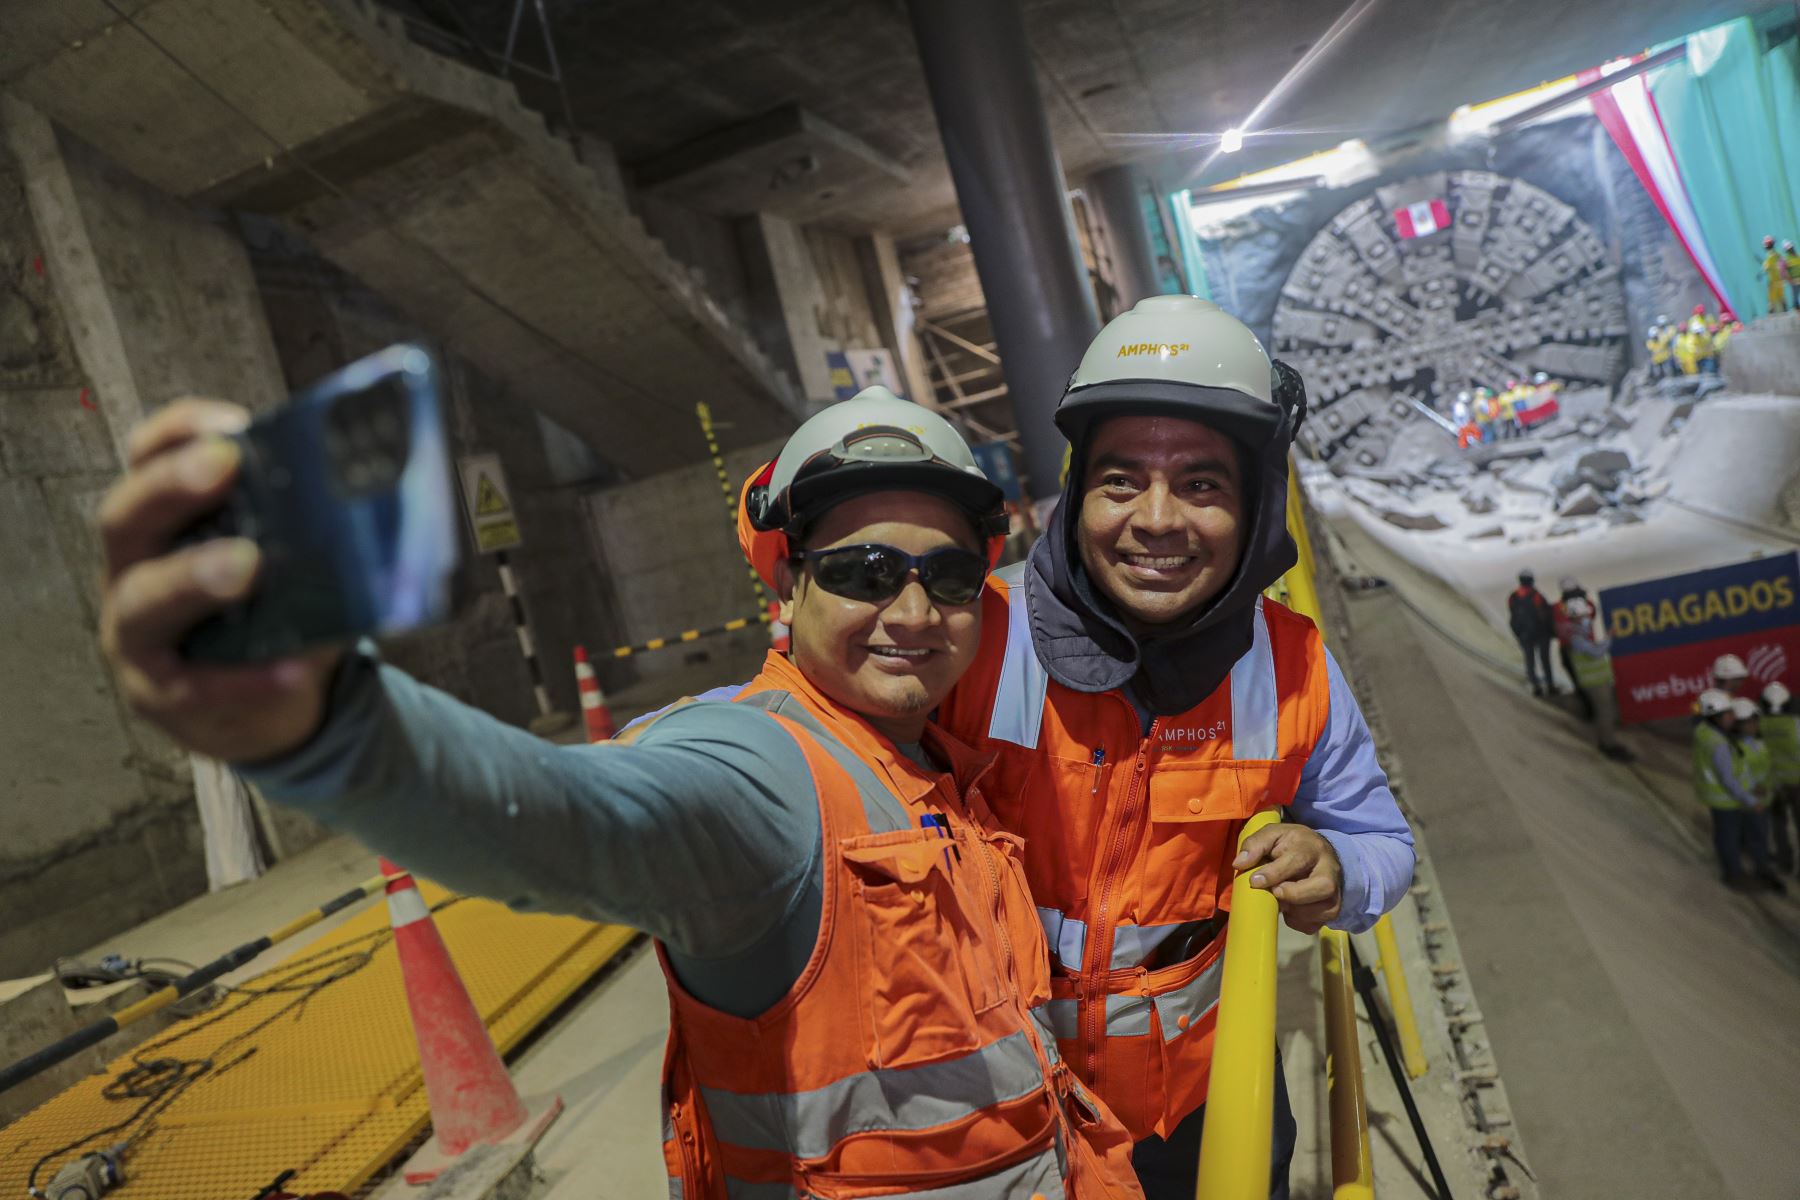 La tuneladora “Micaela” concluyó la perforación de un tramo de la Línea 2 del Metro de Lima de 1100 metros de longitud, que va de la estación Insurgentes a la estación Juan Pablo II, en el distrito de Bellavista, provincia constitucional del Callao.

Foto:ANDINA/MTC